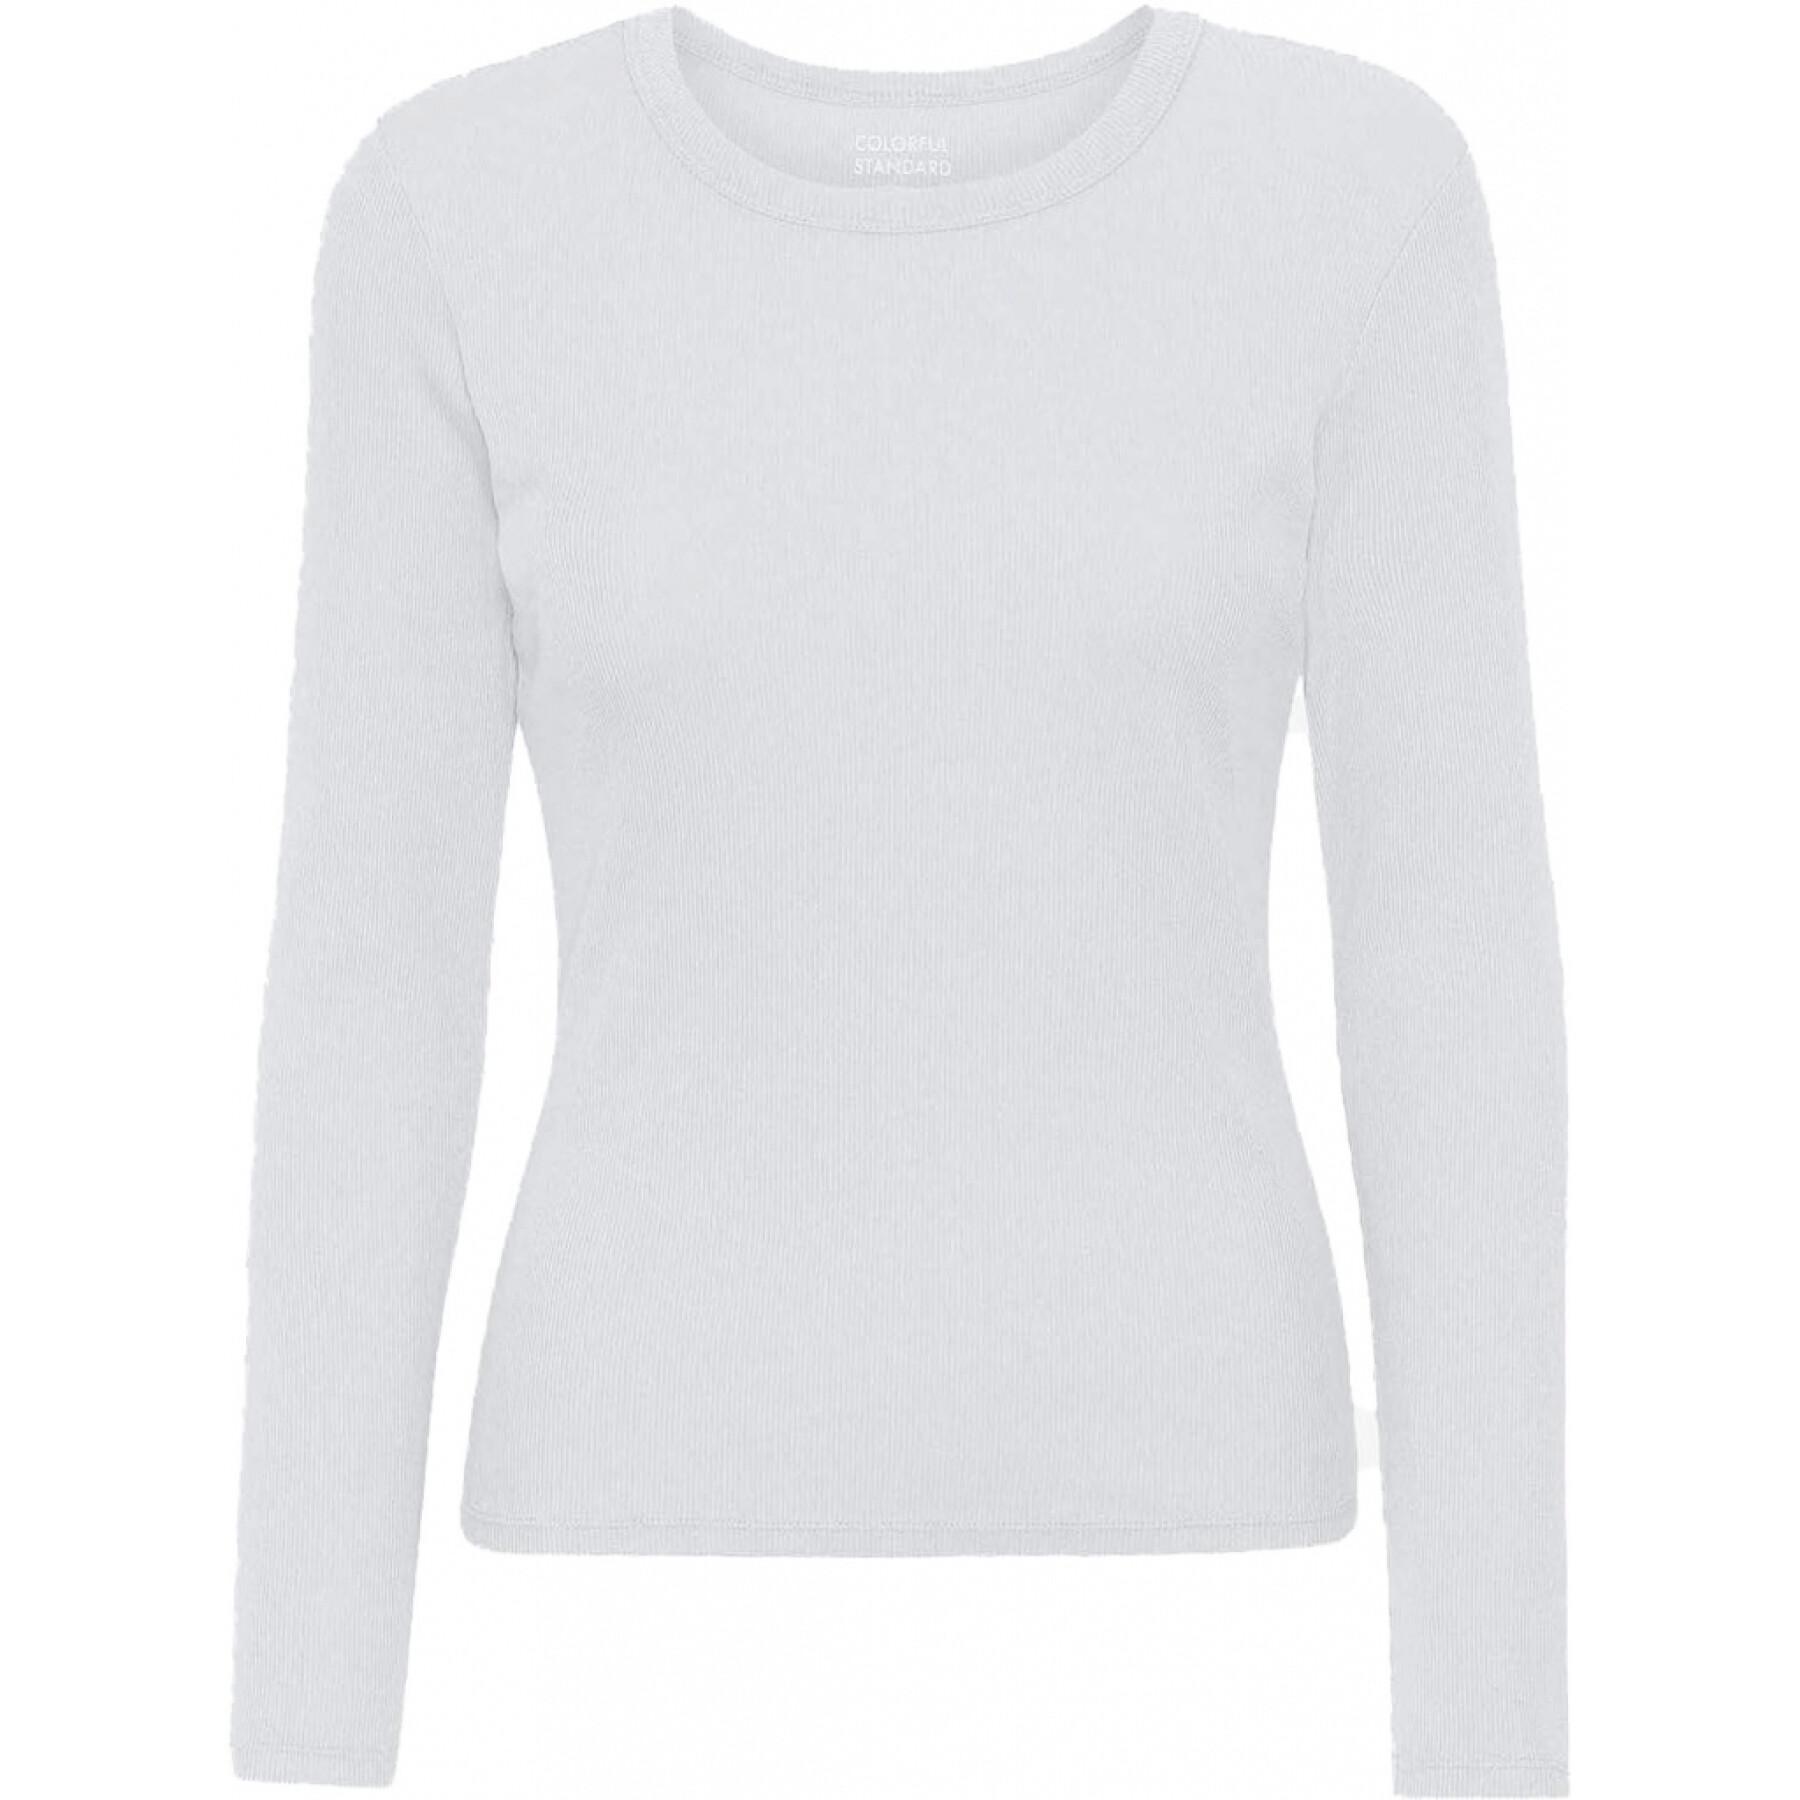 T-shirt maniche lunghe a coste da donna Colorful Standard Organic optical white